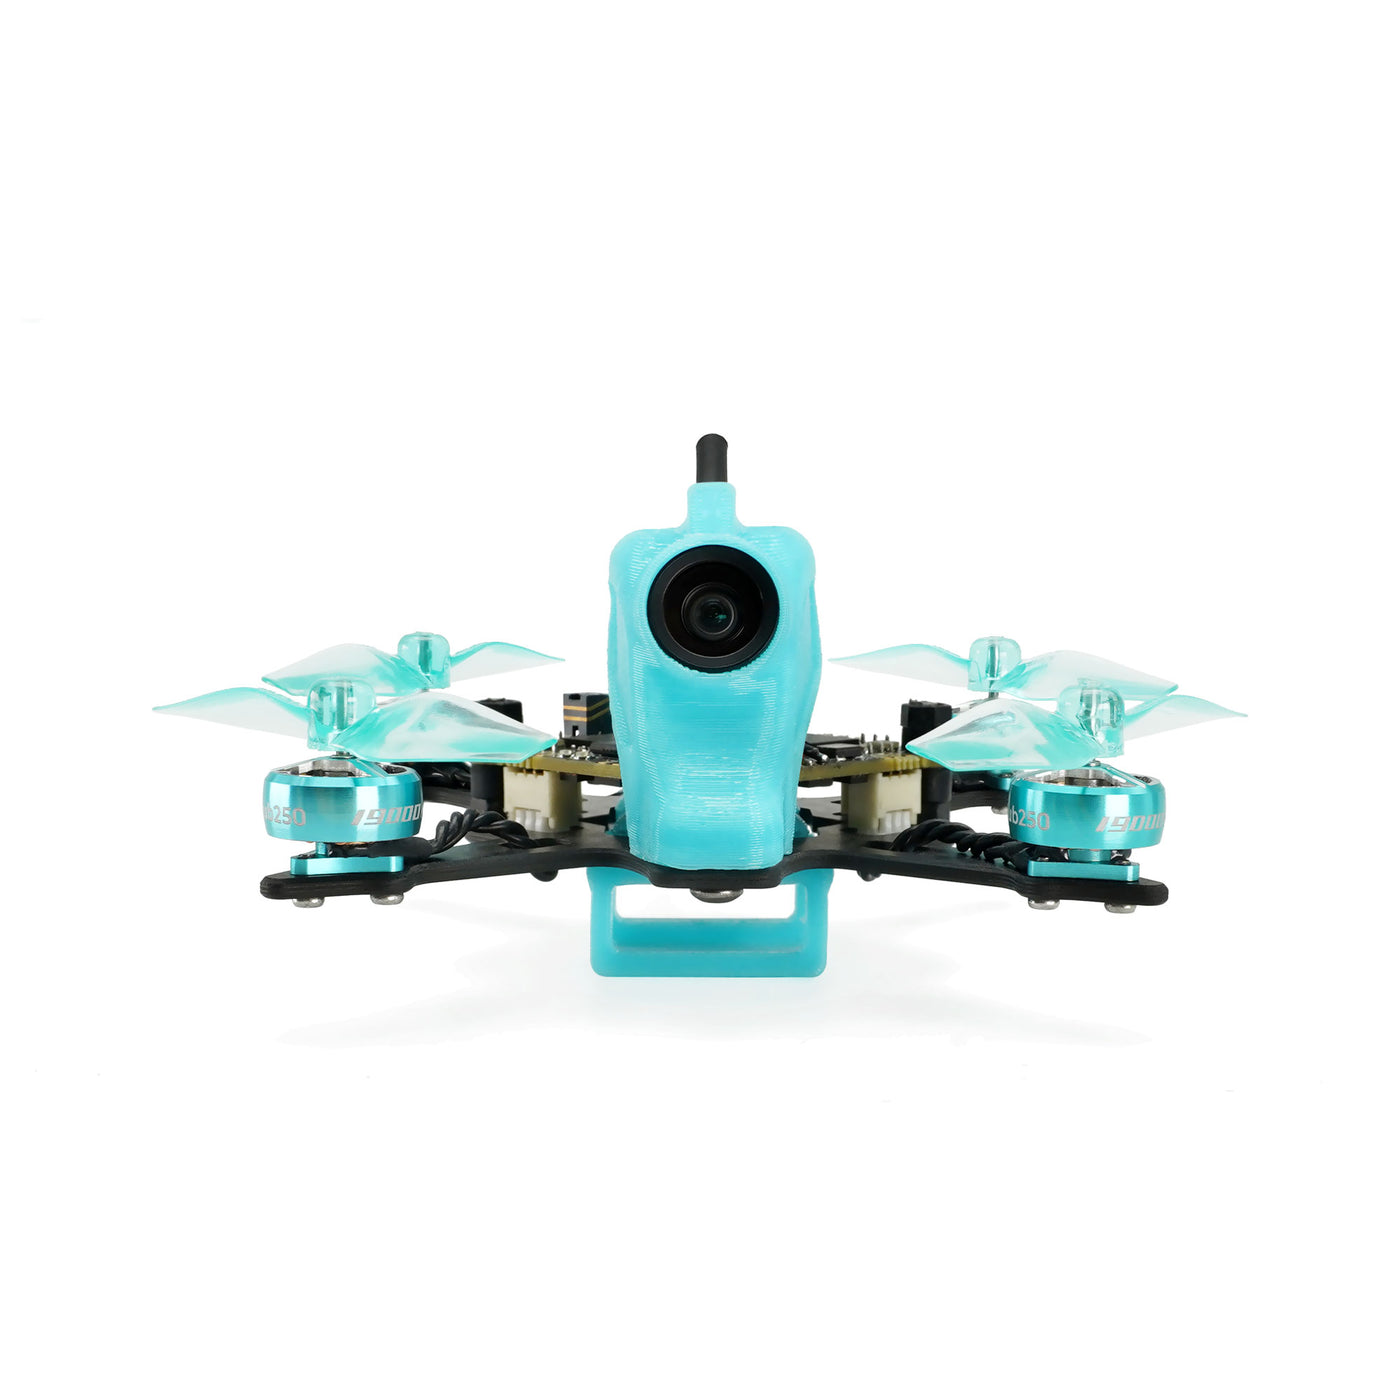 nanofly16 mini drone